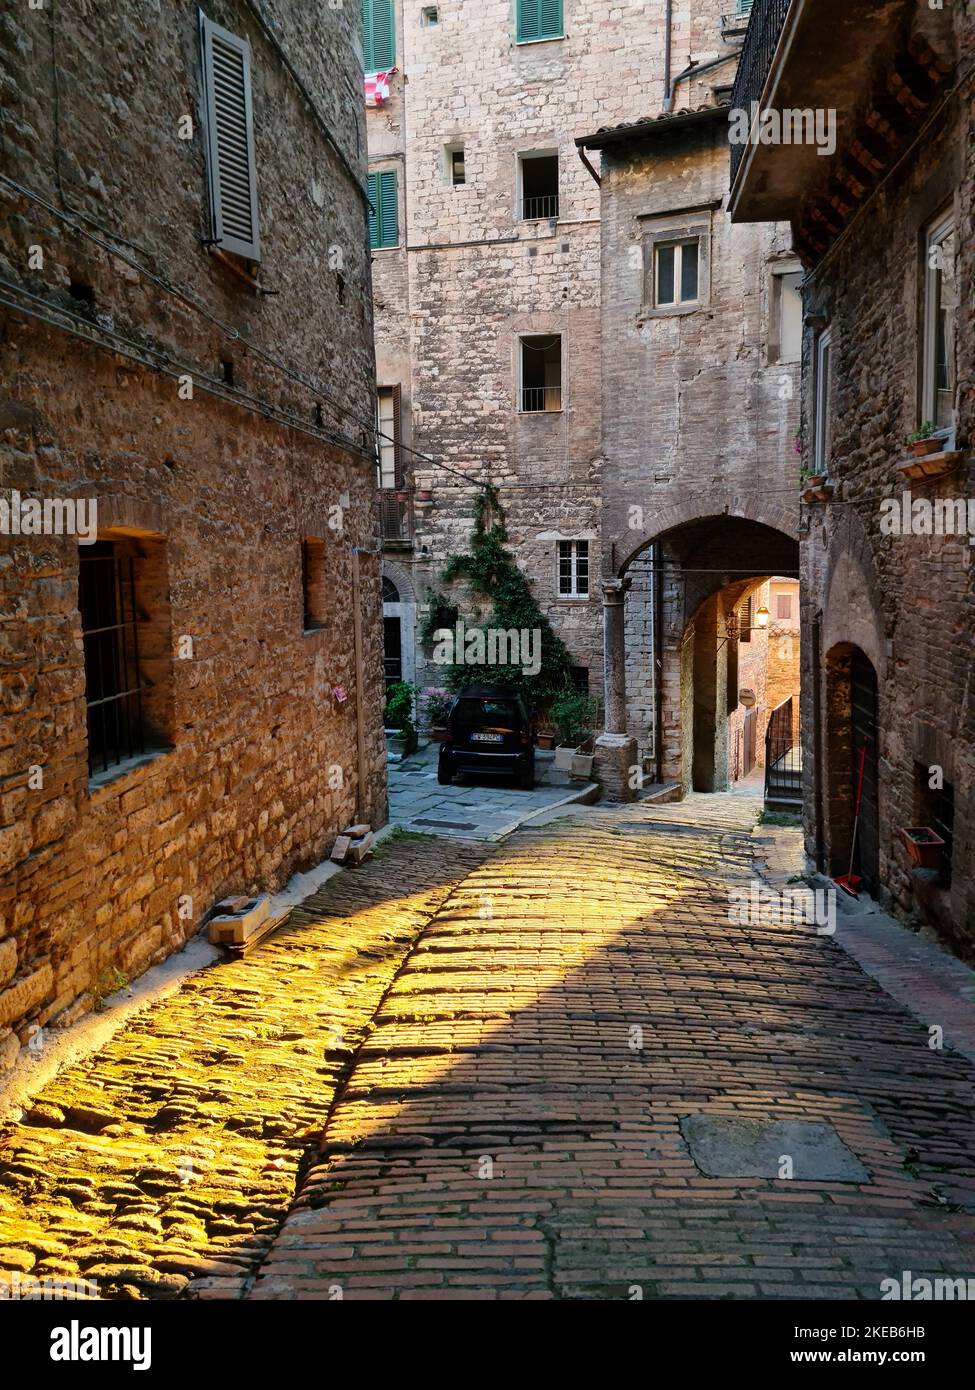 Perugia ist die Hauptstadt der Region Umbrien und liegt auf Hügeln. Es ist voll von Denkmälern, Mauern und Kunstwerken mittelalterlichen Ursprungs. Stockfoto